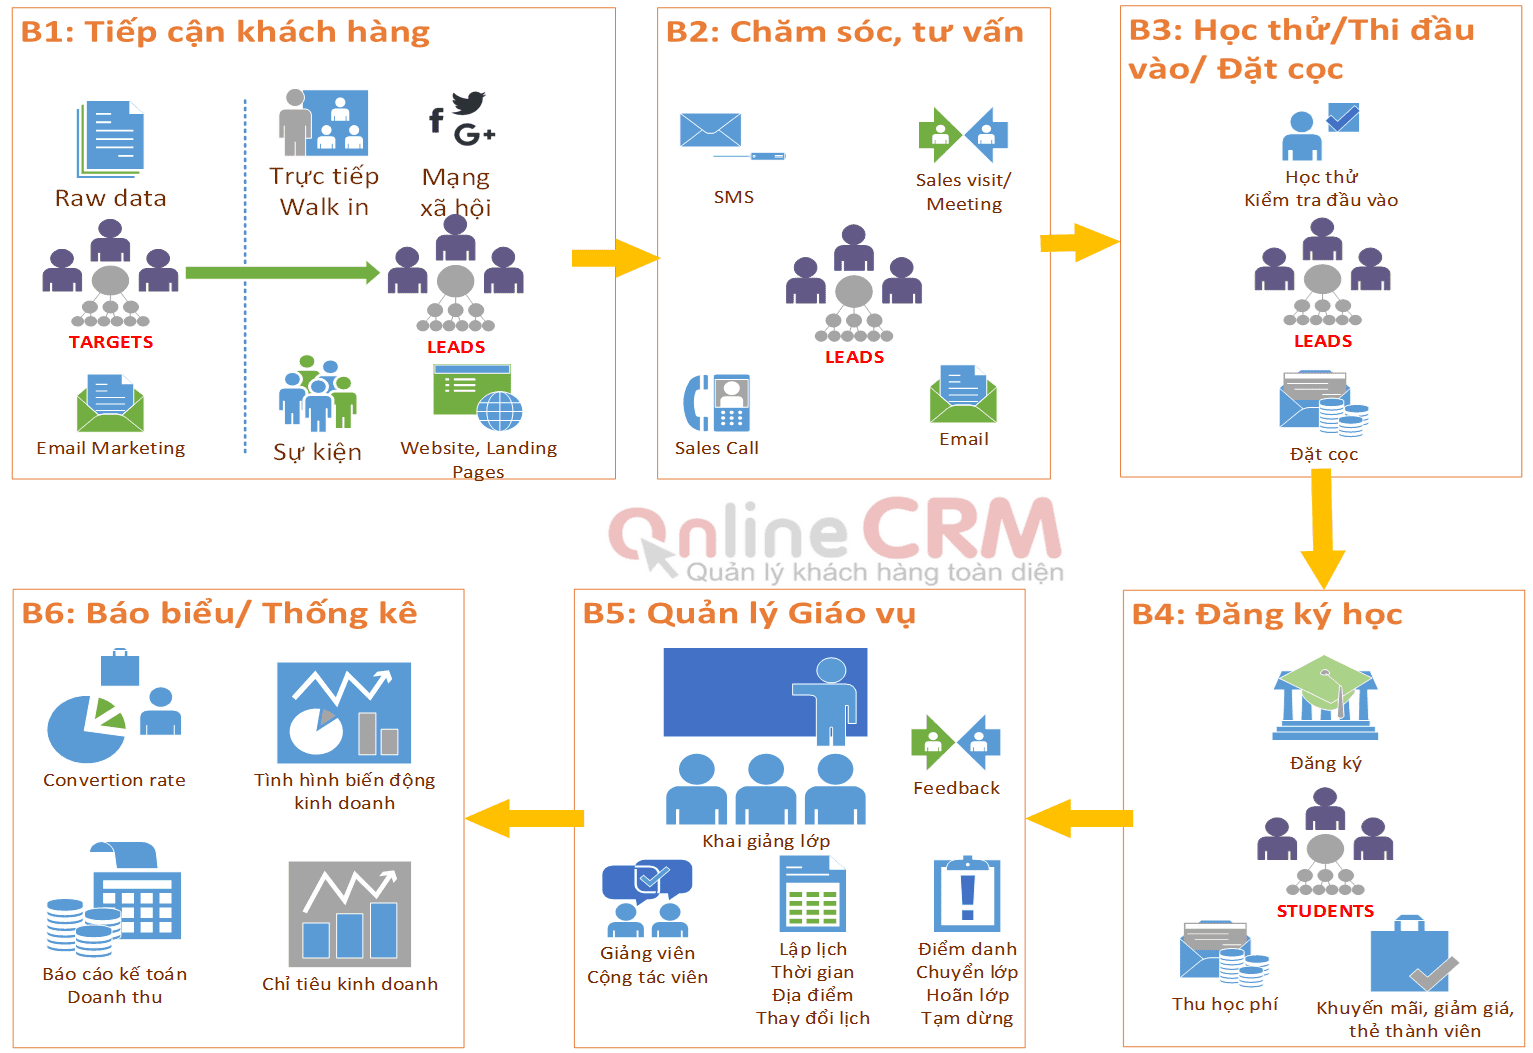 quy trình crm giáo dục - OnlineCRM